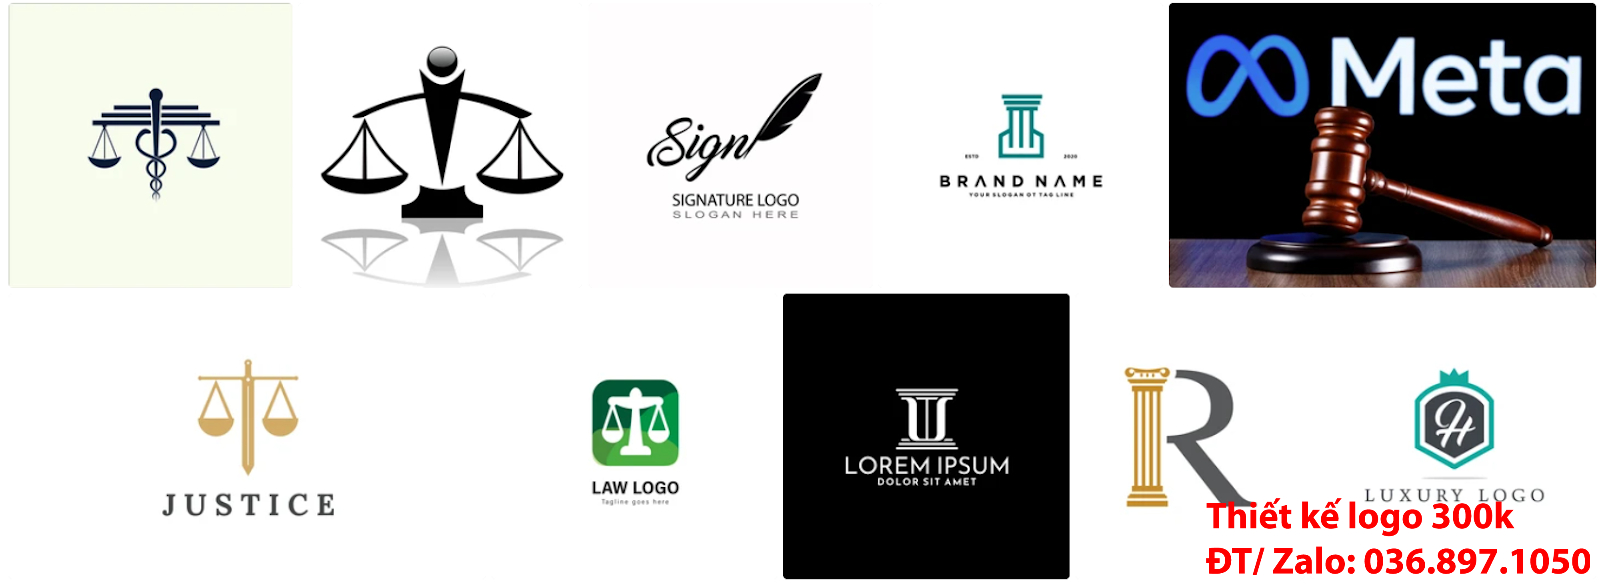 Mẫu logo công ty luật sư đẹp miễn phí online chuyên nghiệp và uy tín tại công ty thiết kế lô gô giá rẻ Hà Nội